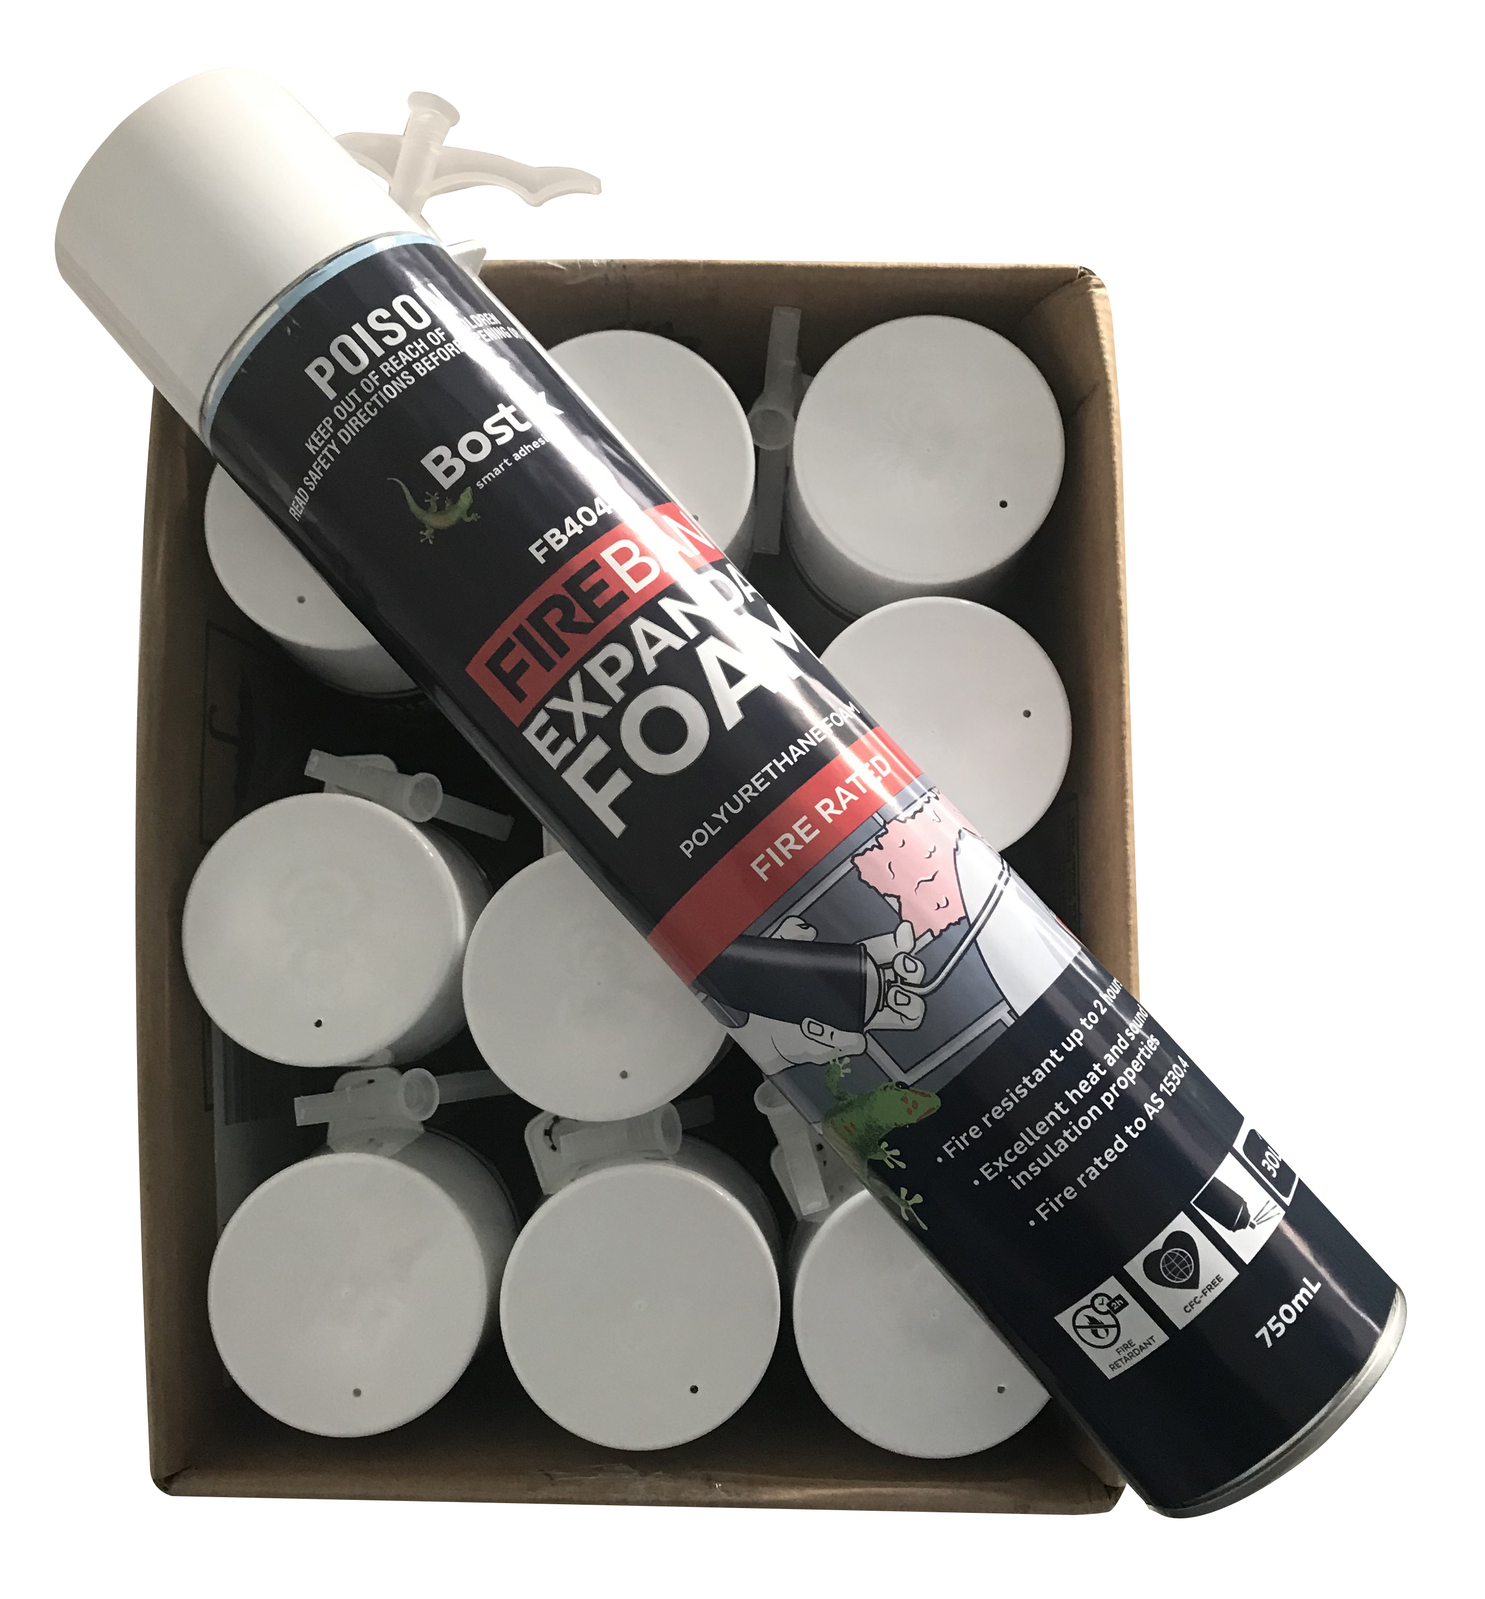 Bostik Expanda Foam 500ml Expanding Foam Multi Purpose Filler Adhesive  Seals